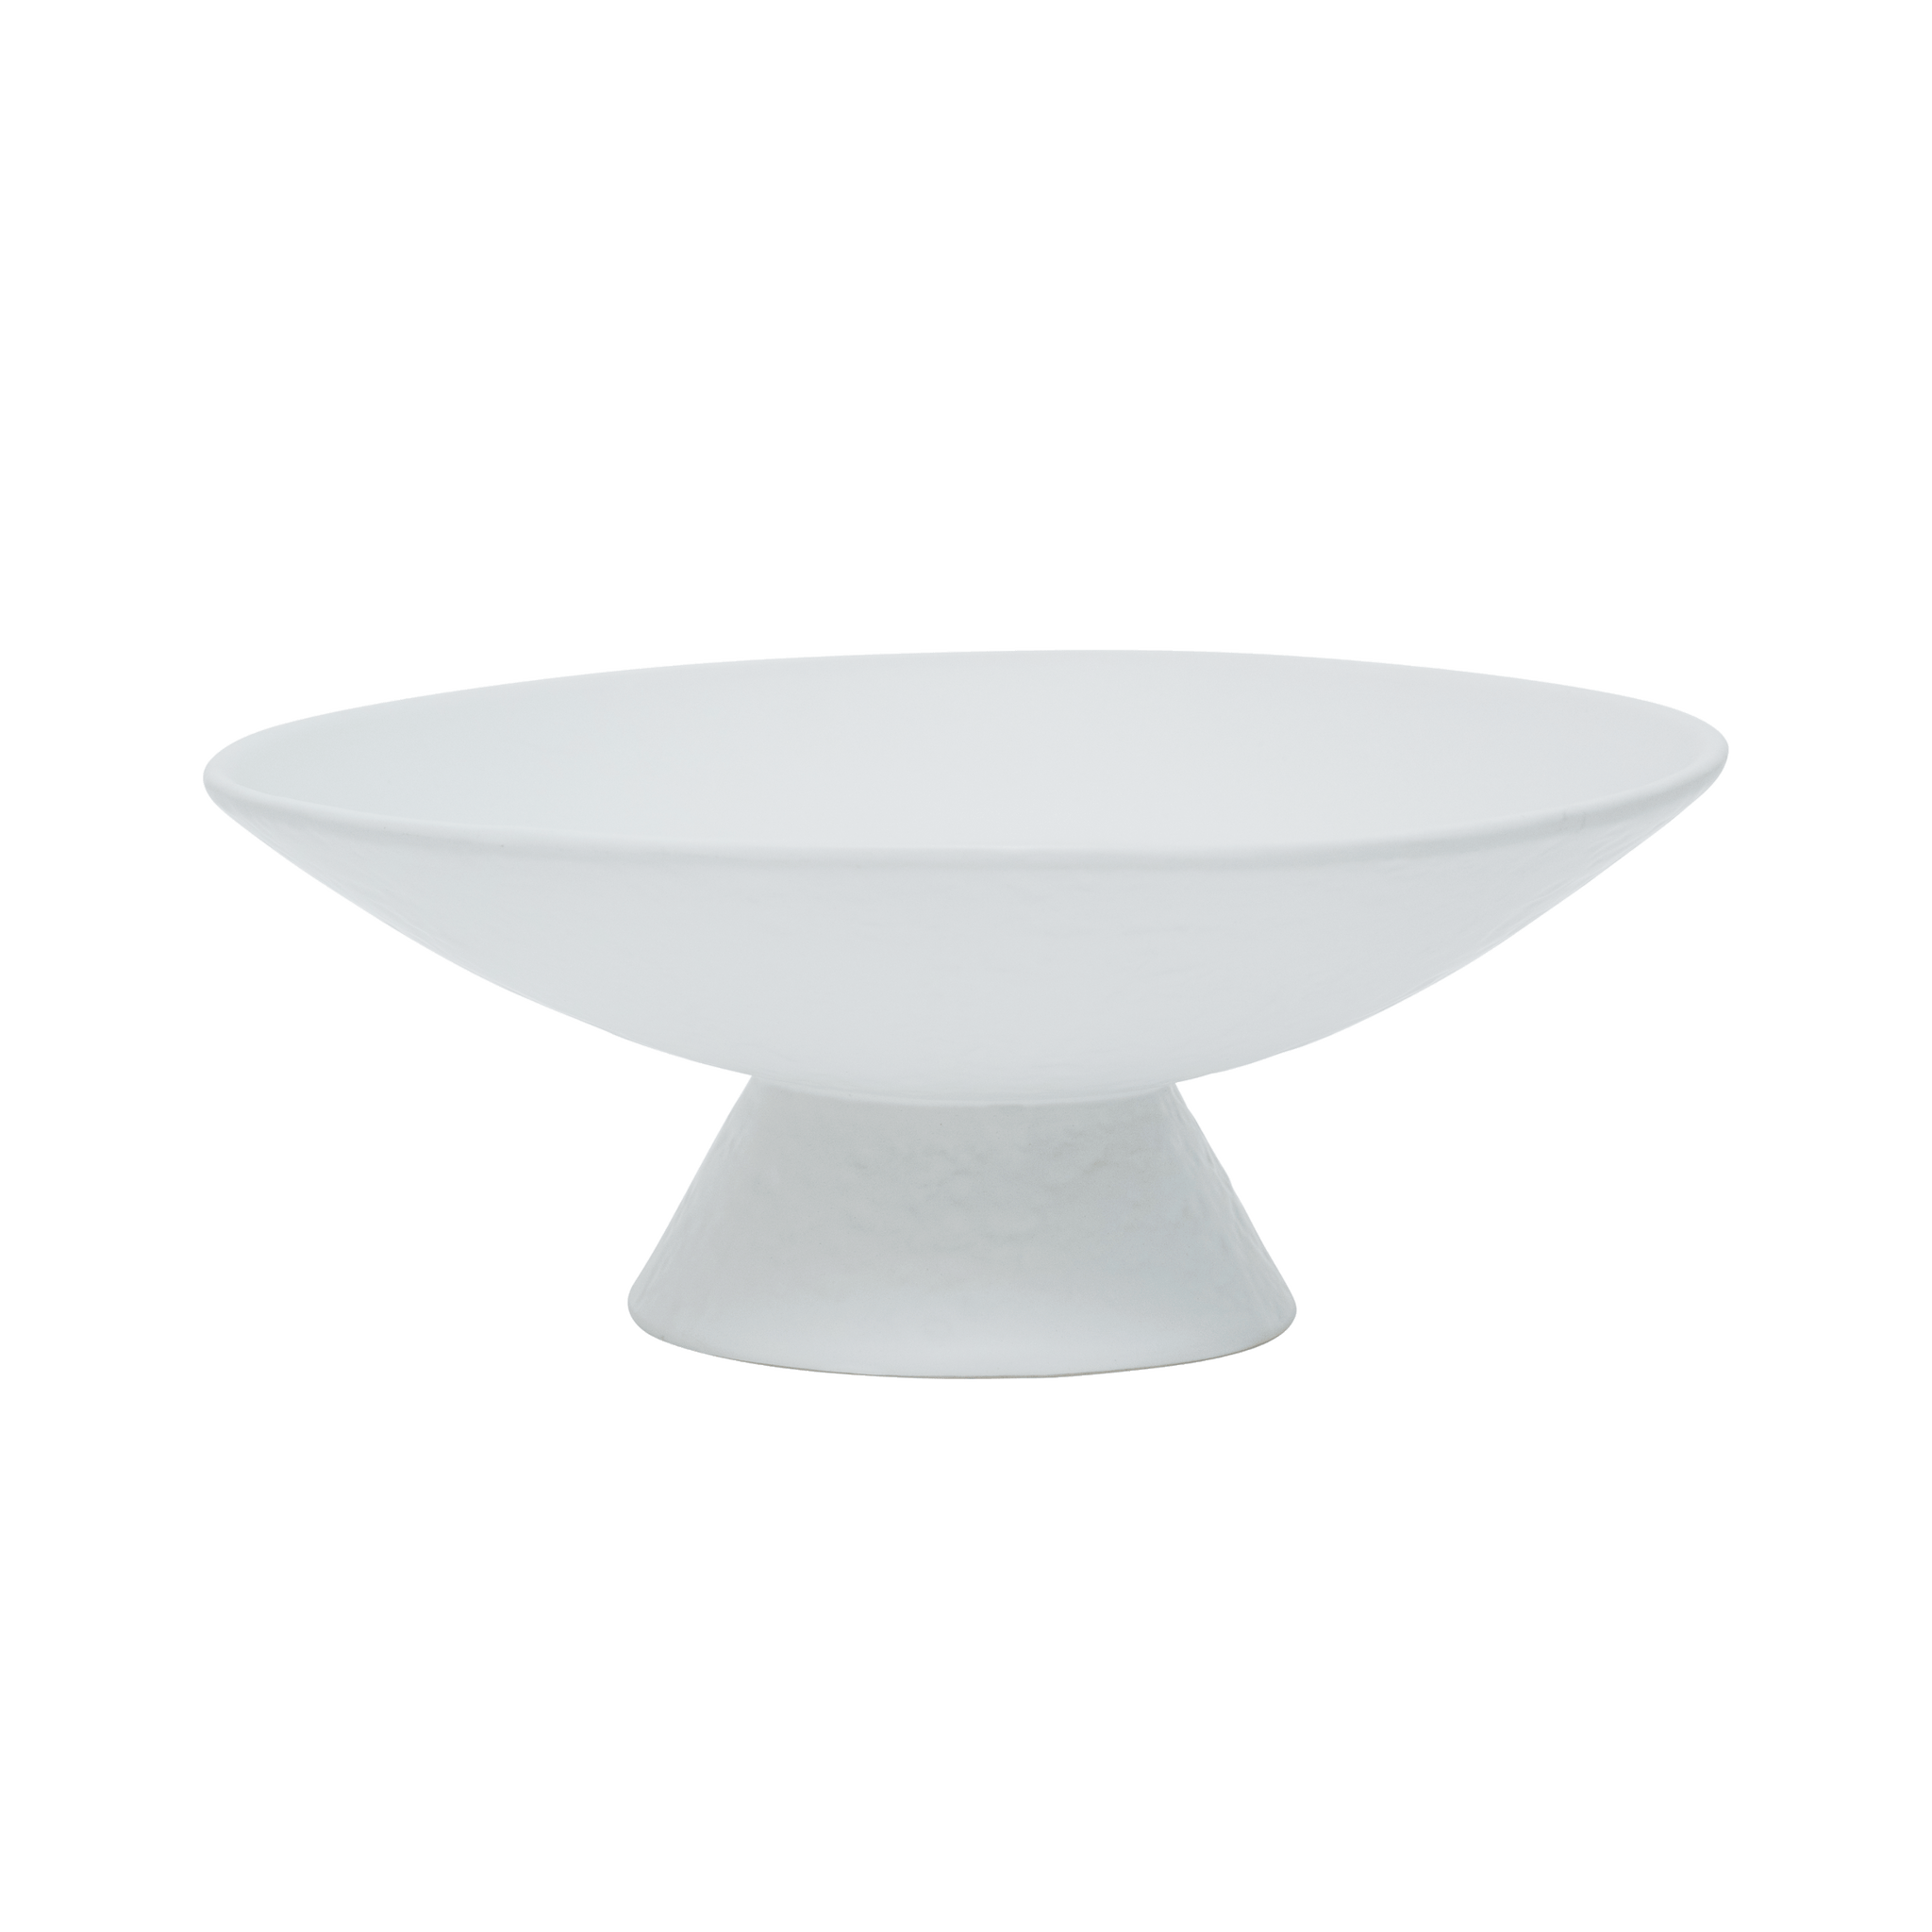 UNC Decorative Bowl On Foot - Ceramic